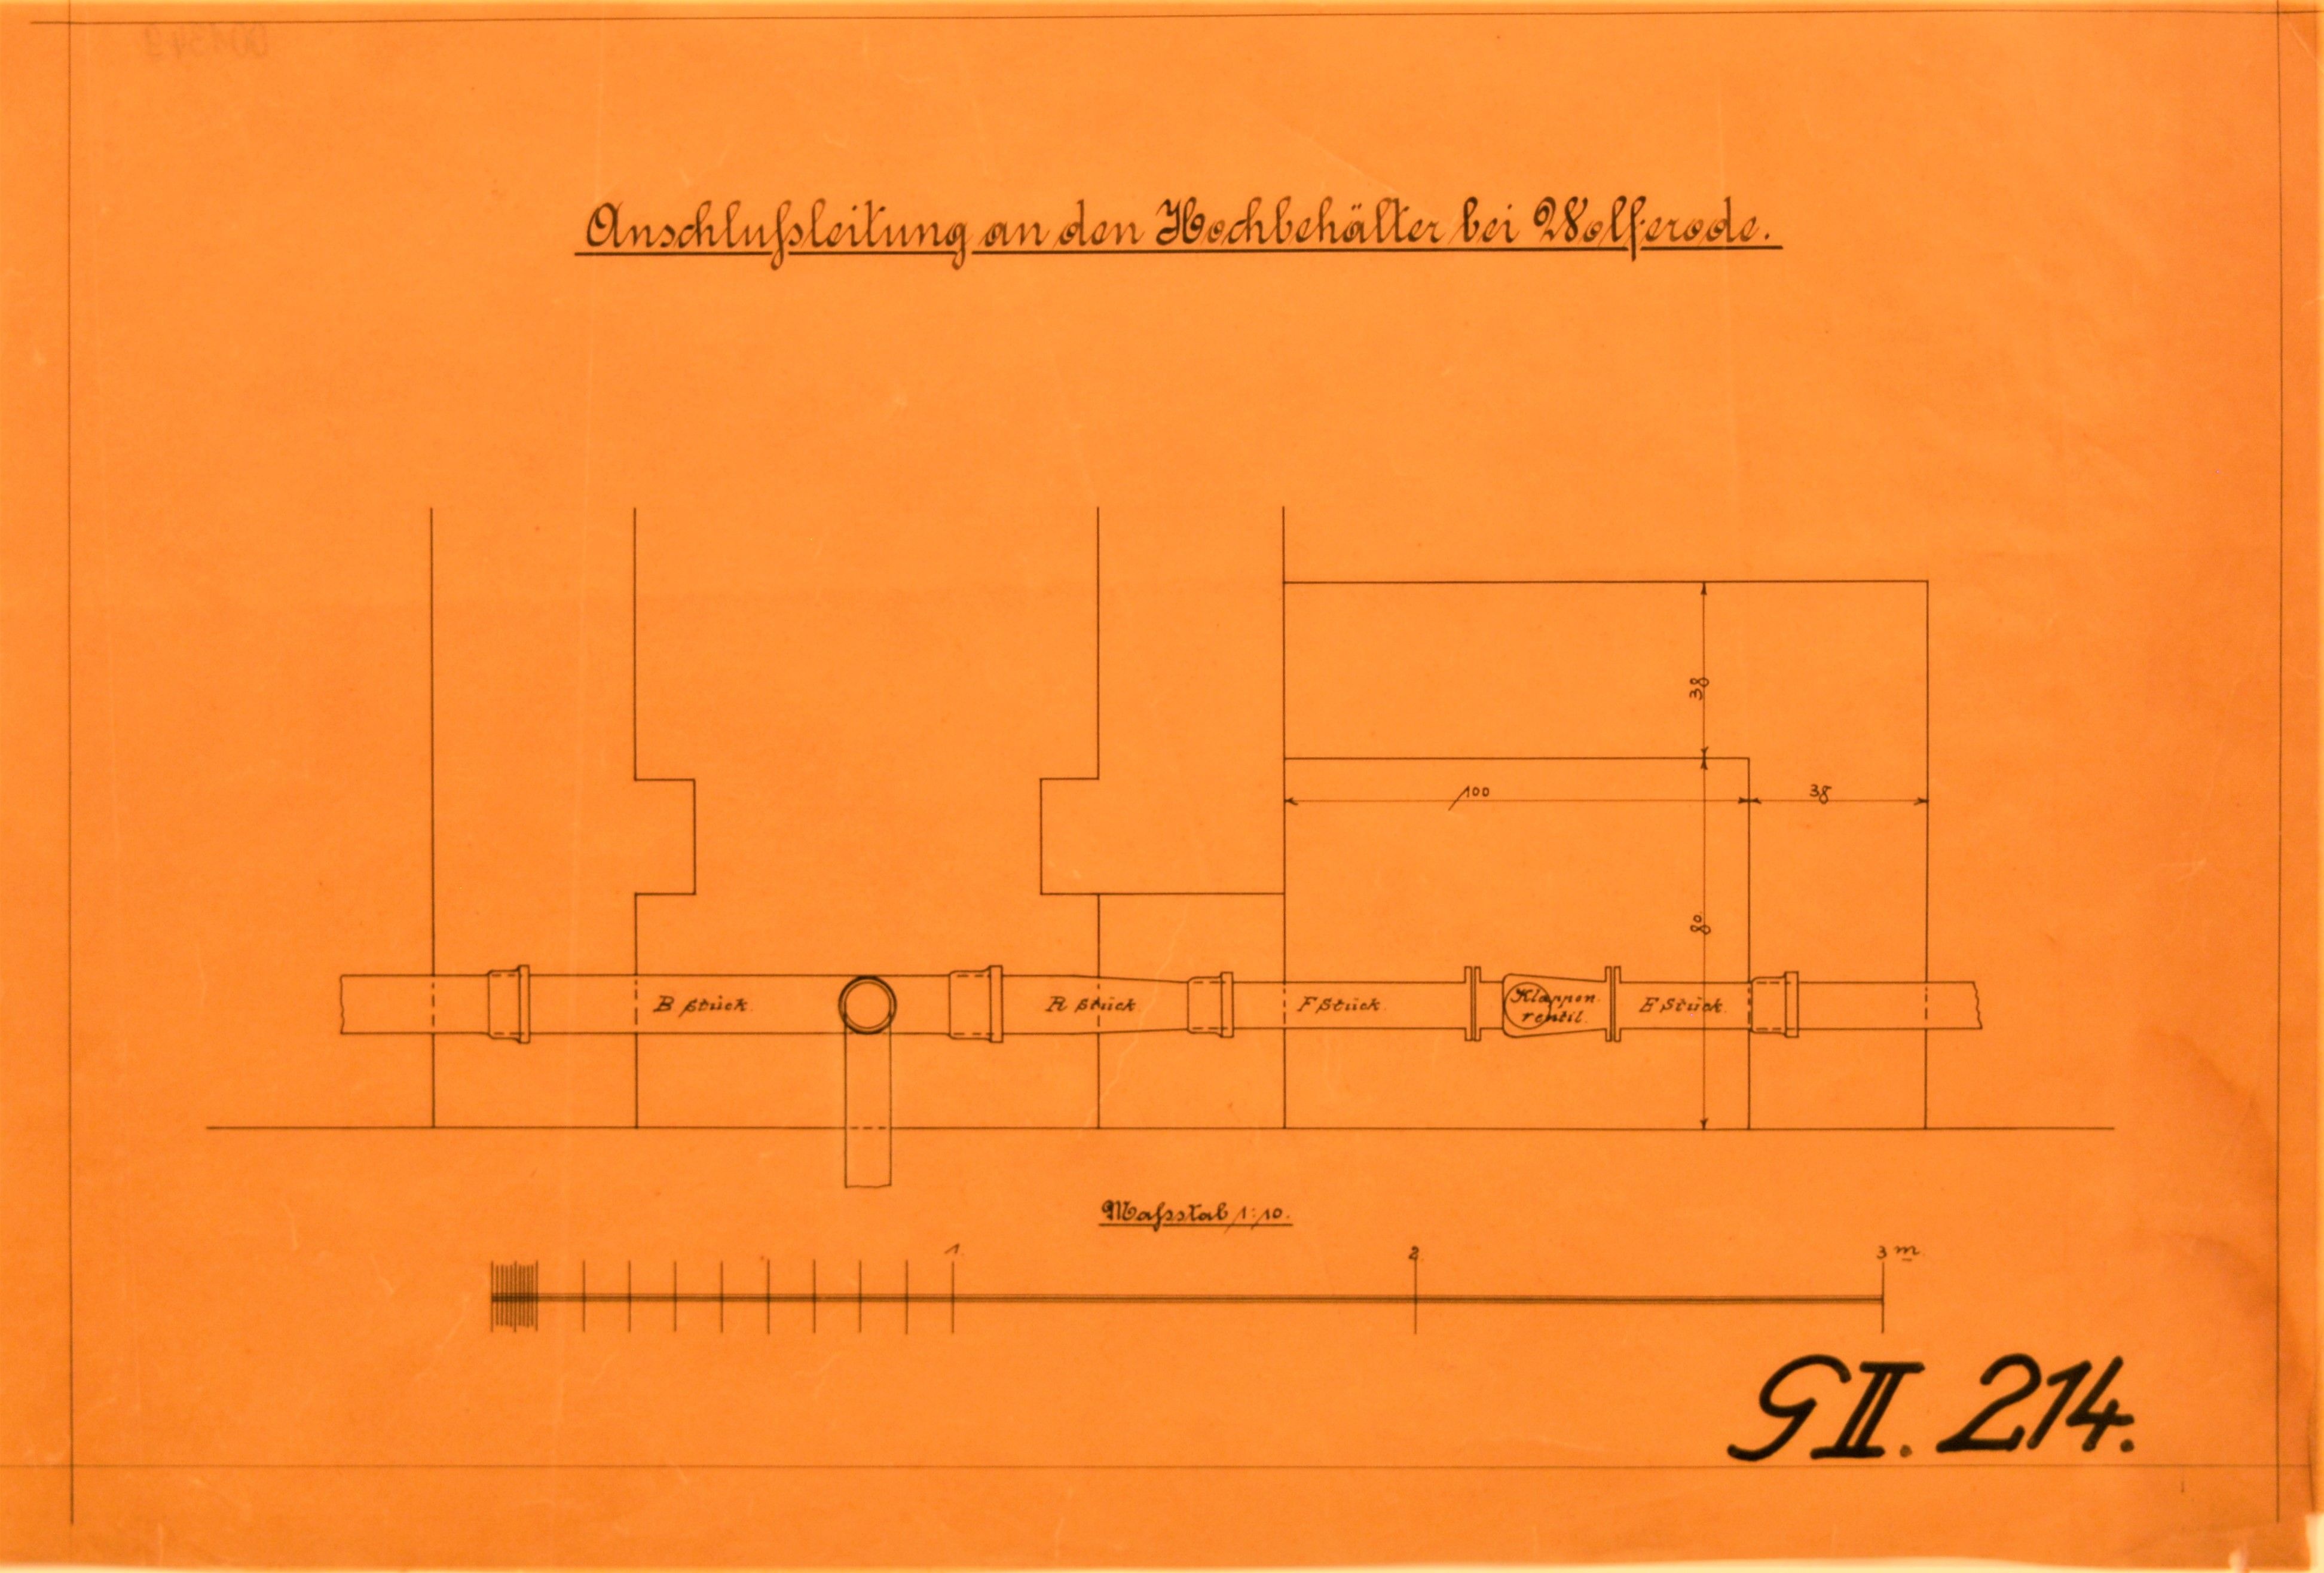 Anschlußleitung an den Hochbehälter bei Wolferode. (Mansfeld-Museum im Humboldt-Schloss CC BY-NC-SA)